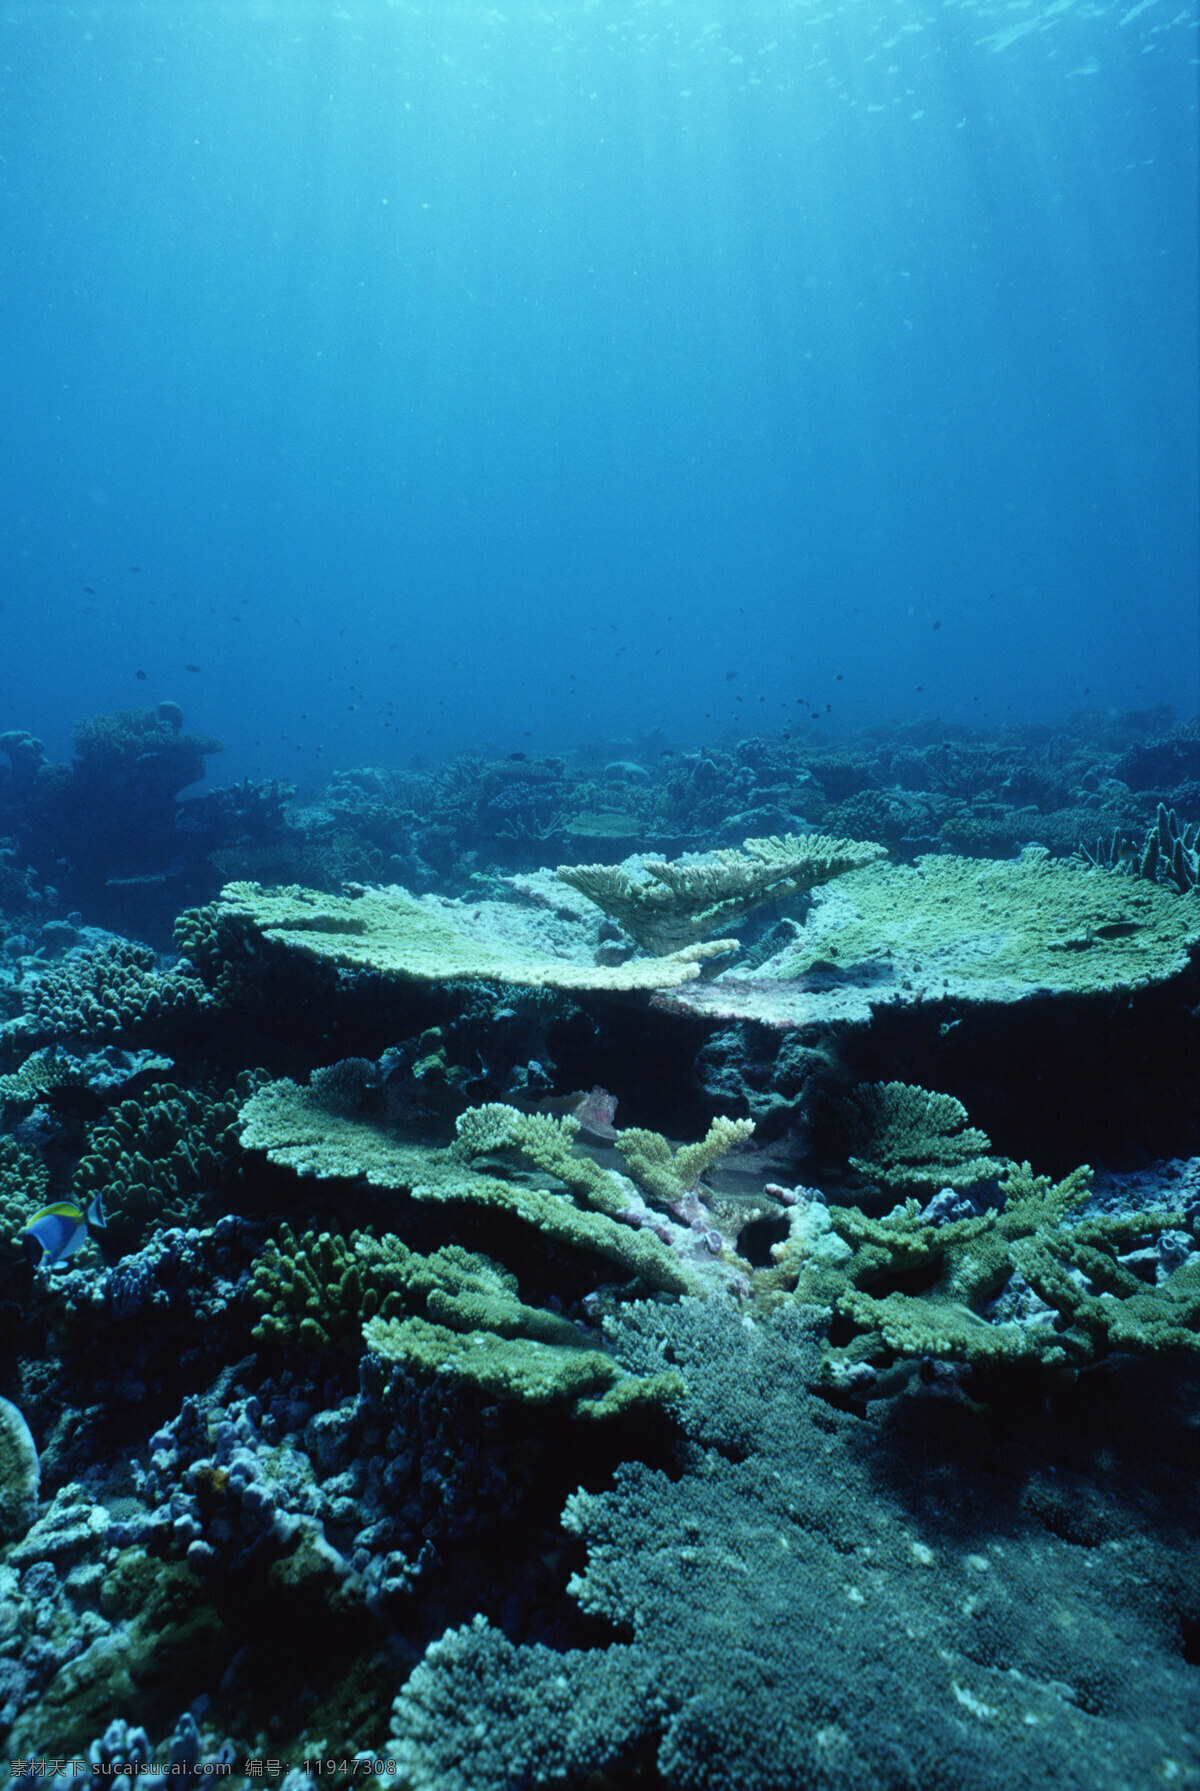 深海植被 海洋藻类 海洋蘑菇澡 海底植物 海底公园 海底世界 水族馆 海底大陆架 深海海水 海洋生物 生物世界